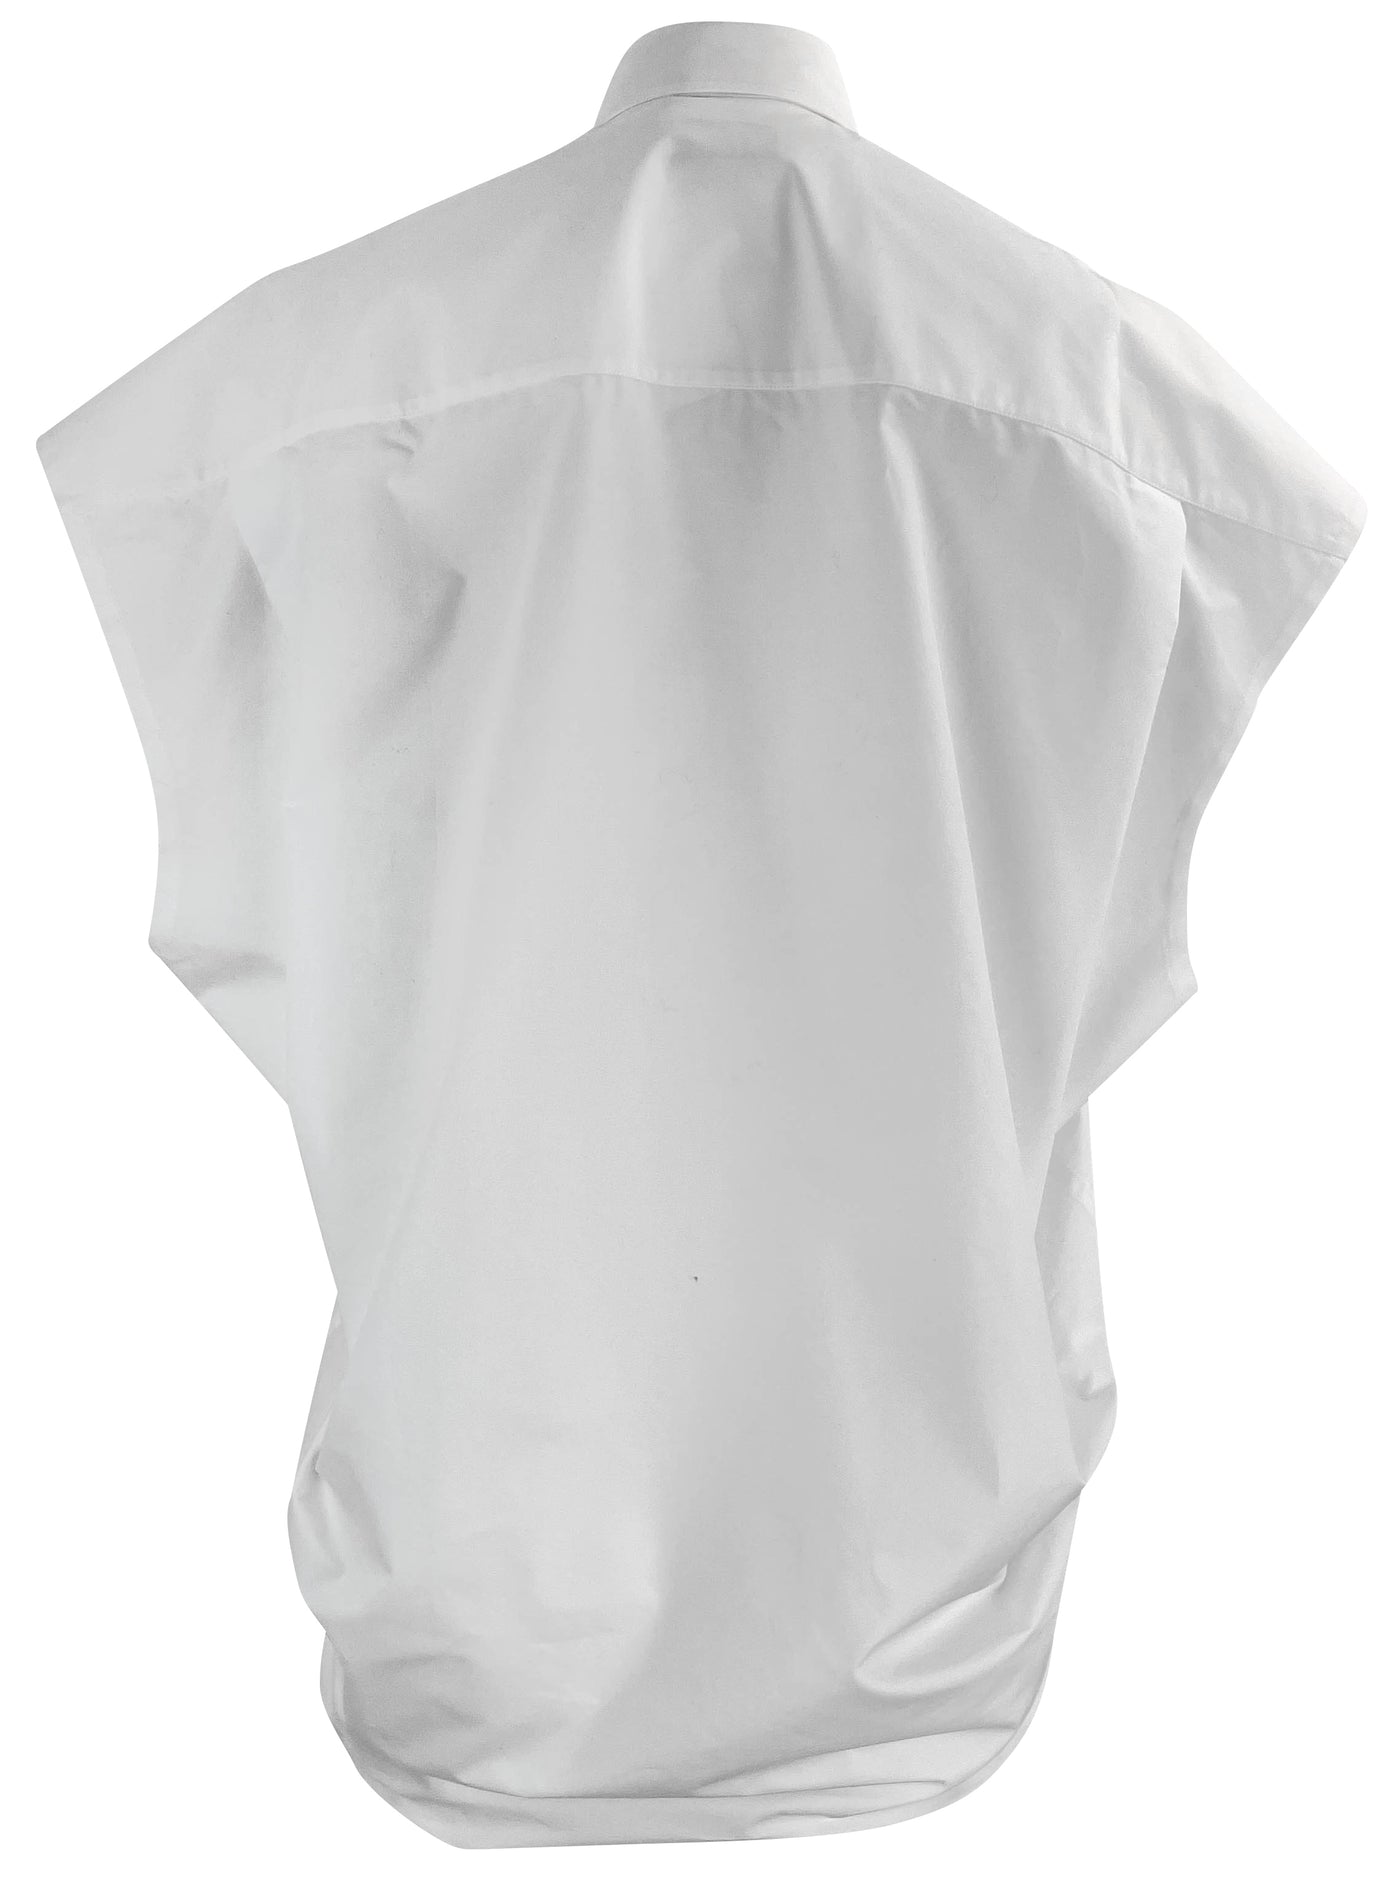 Balenciaga Button-Up Sleeveless Oversized Shirt in White - Discounts on Balenciaga at UAL